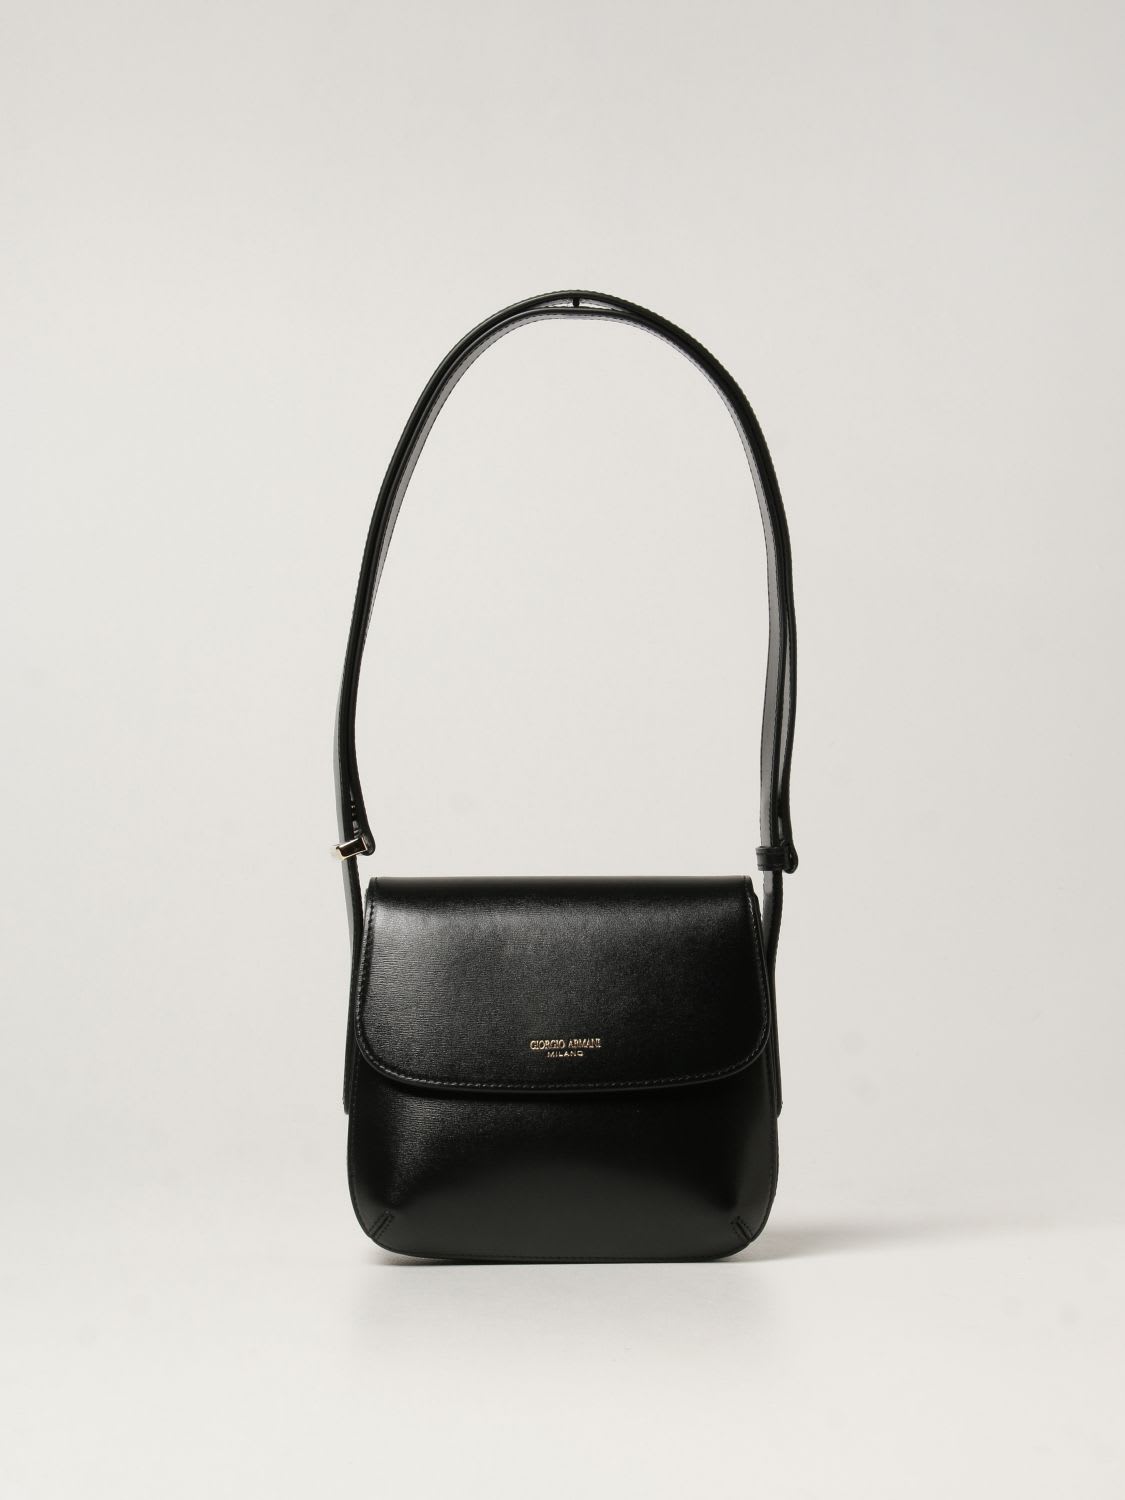 Giorgio Armani Shoulder Bag La Prima Giorgio Armani Bag In Textured Leather